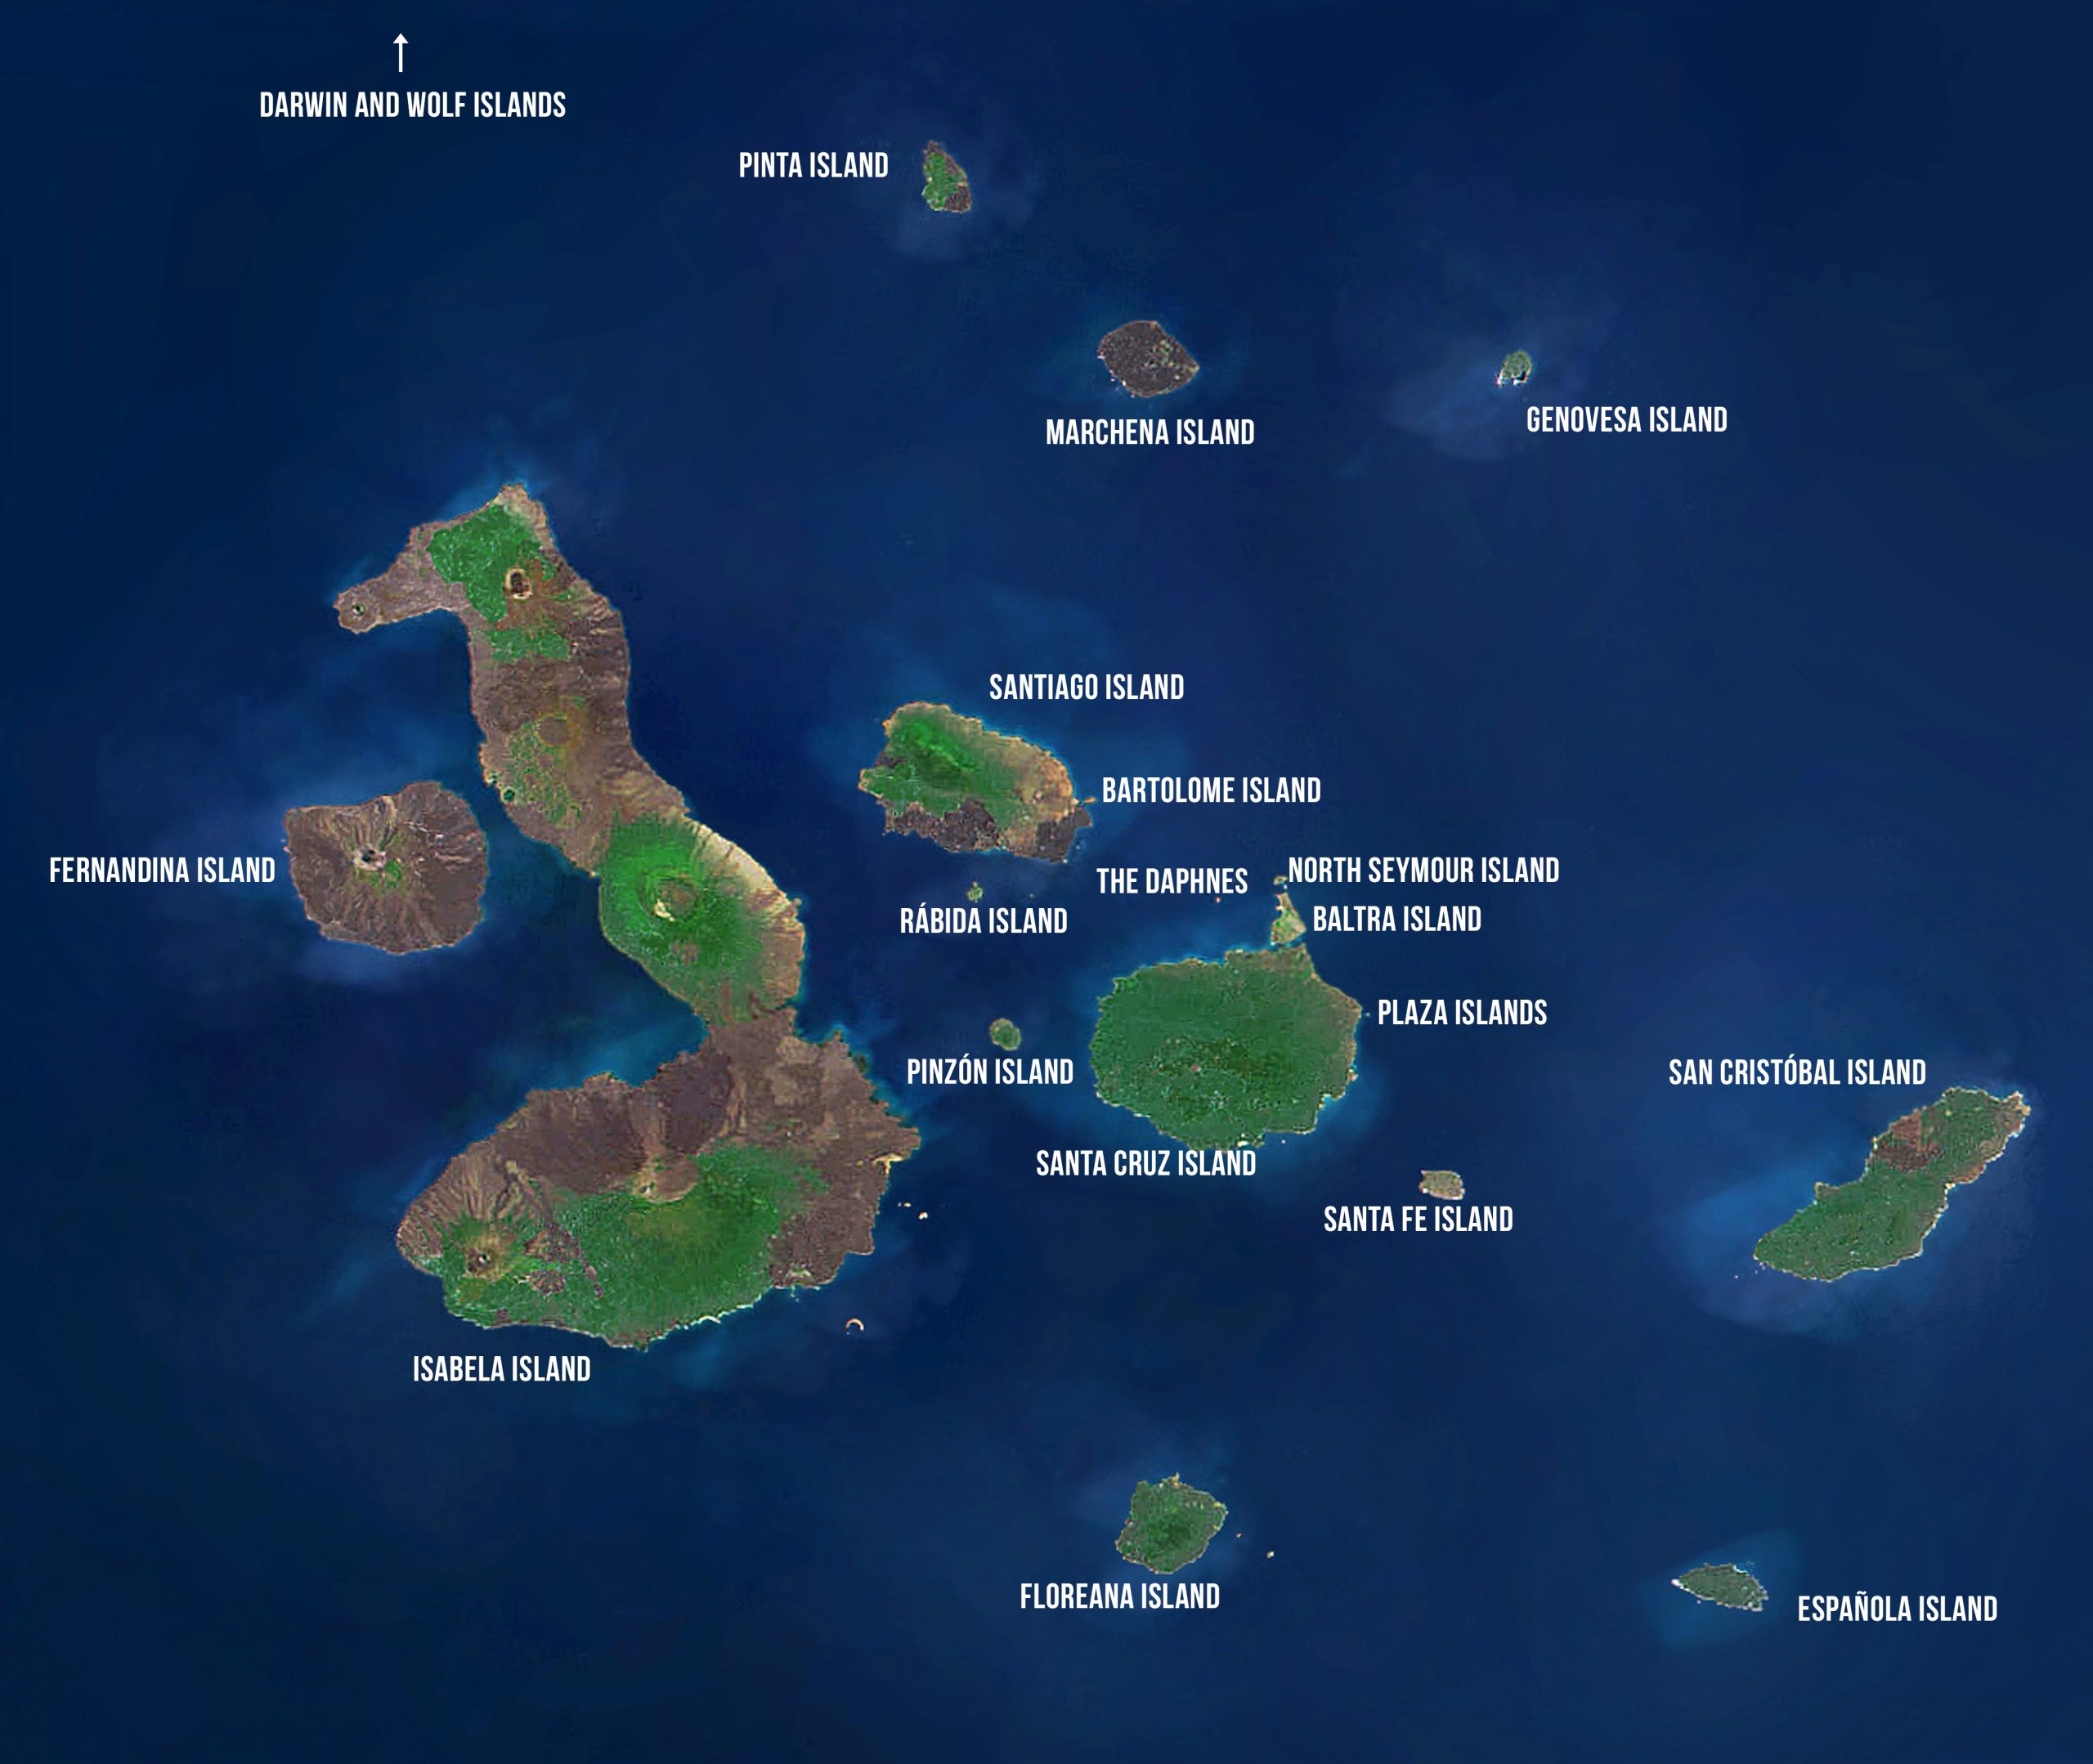 archipelago islands